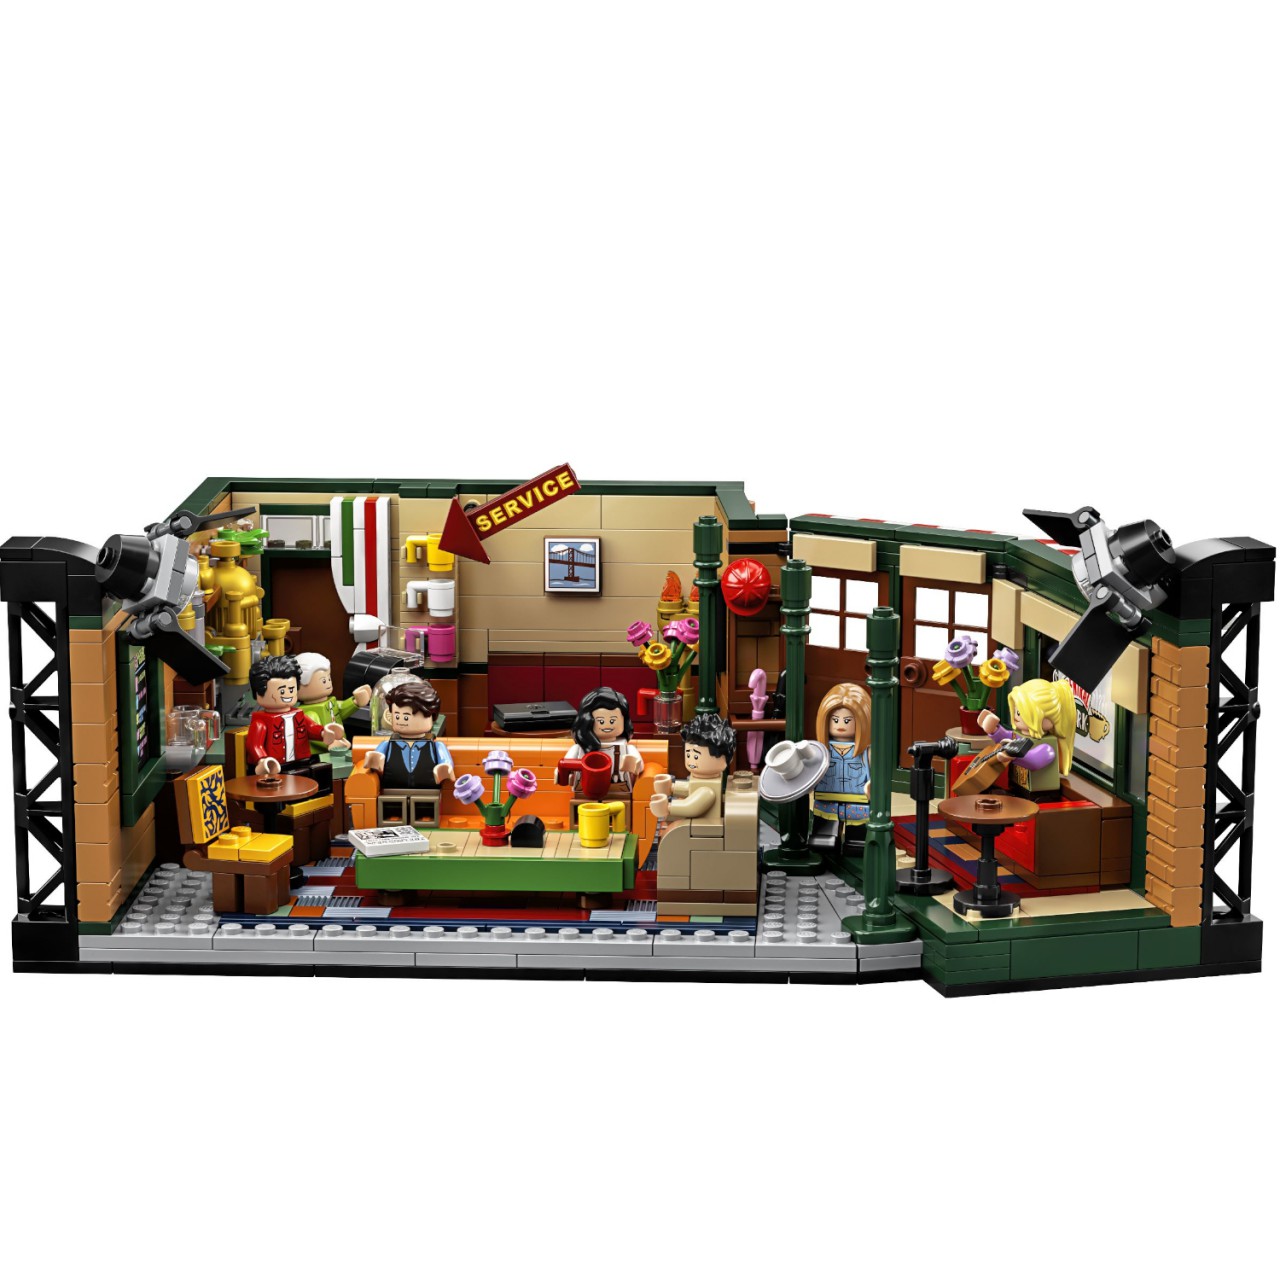 Lego Ideas 21319 Central Perk